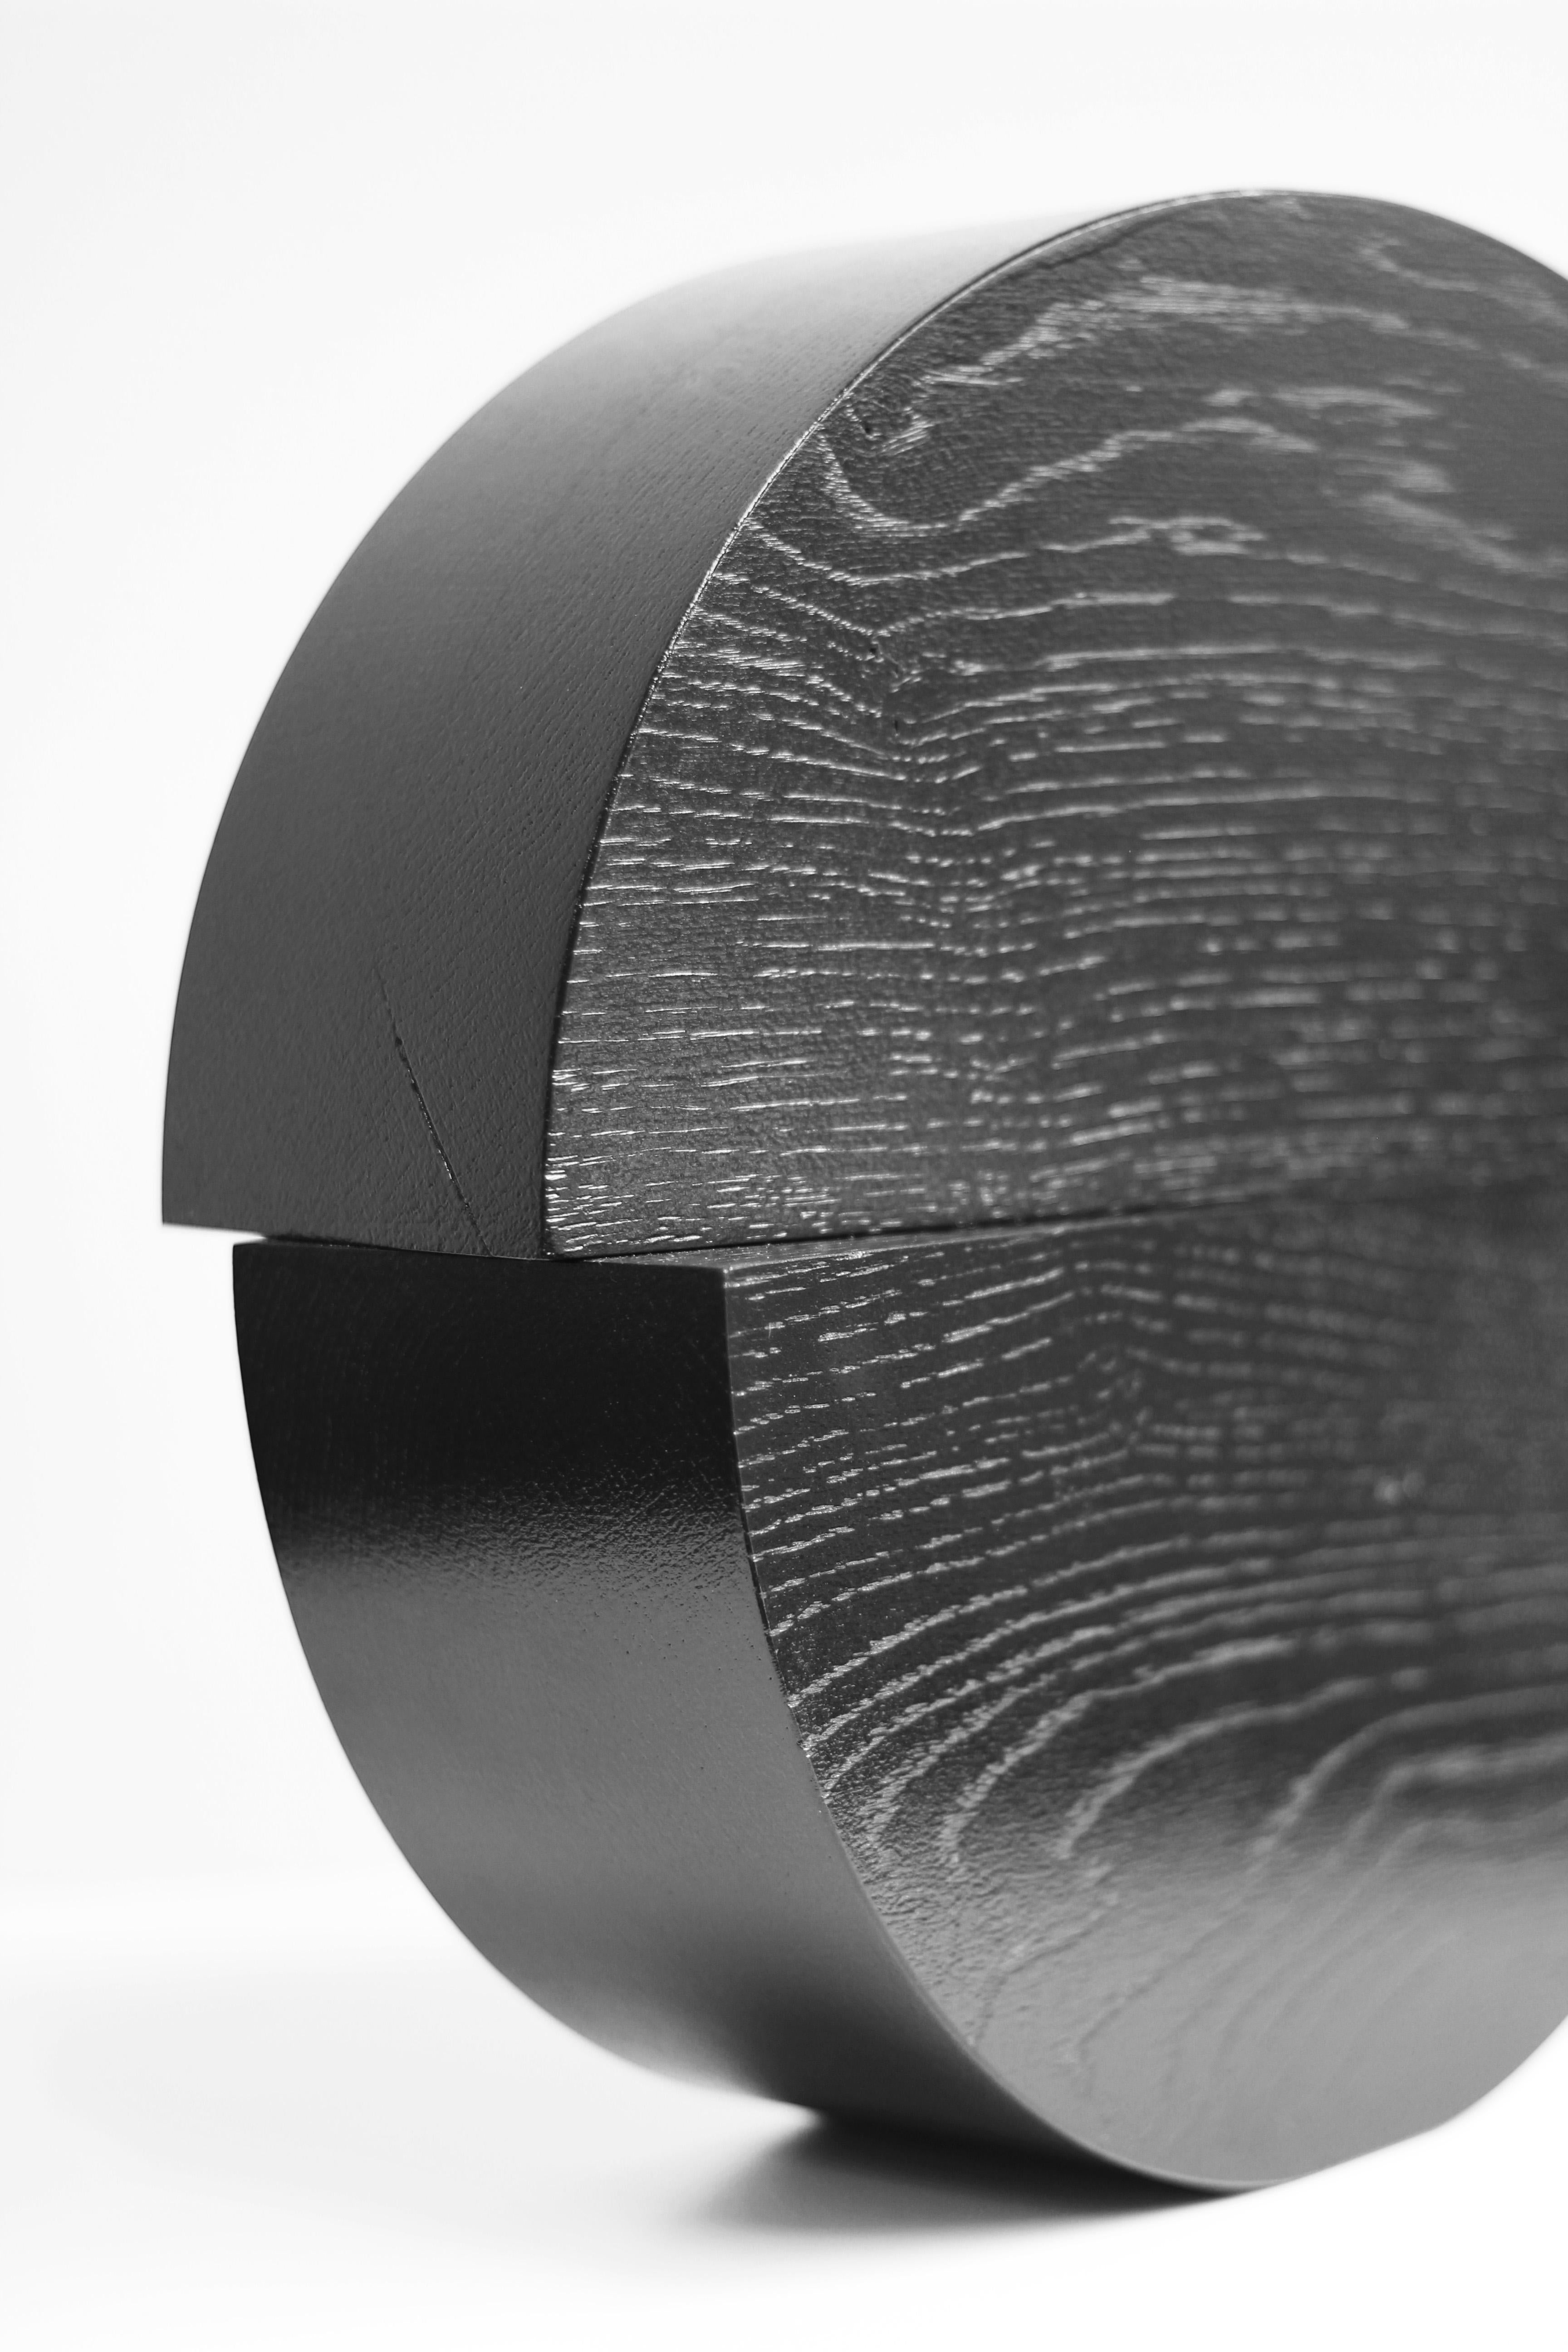 Veneer Black solid oak table top sculpture, X4 O, by Dutch Studio Verbaan For Sale